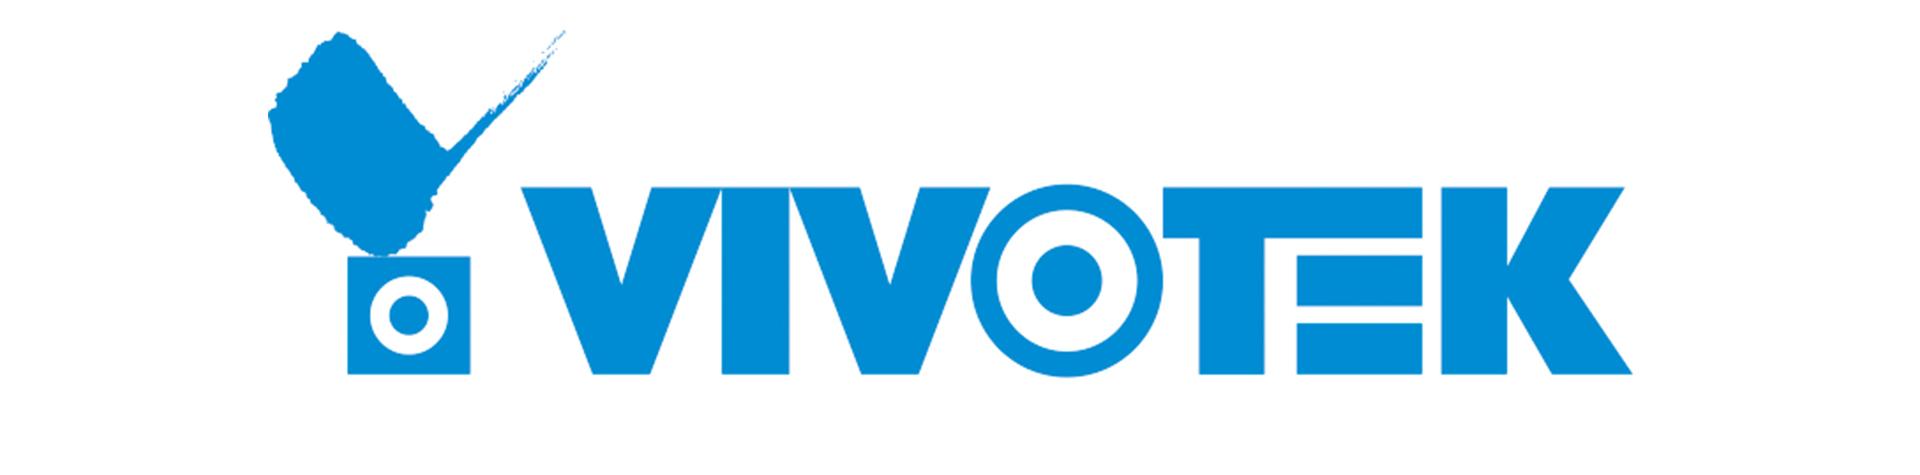 VIVOTEK Logo - Security & Surveillance Products